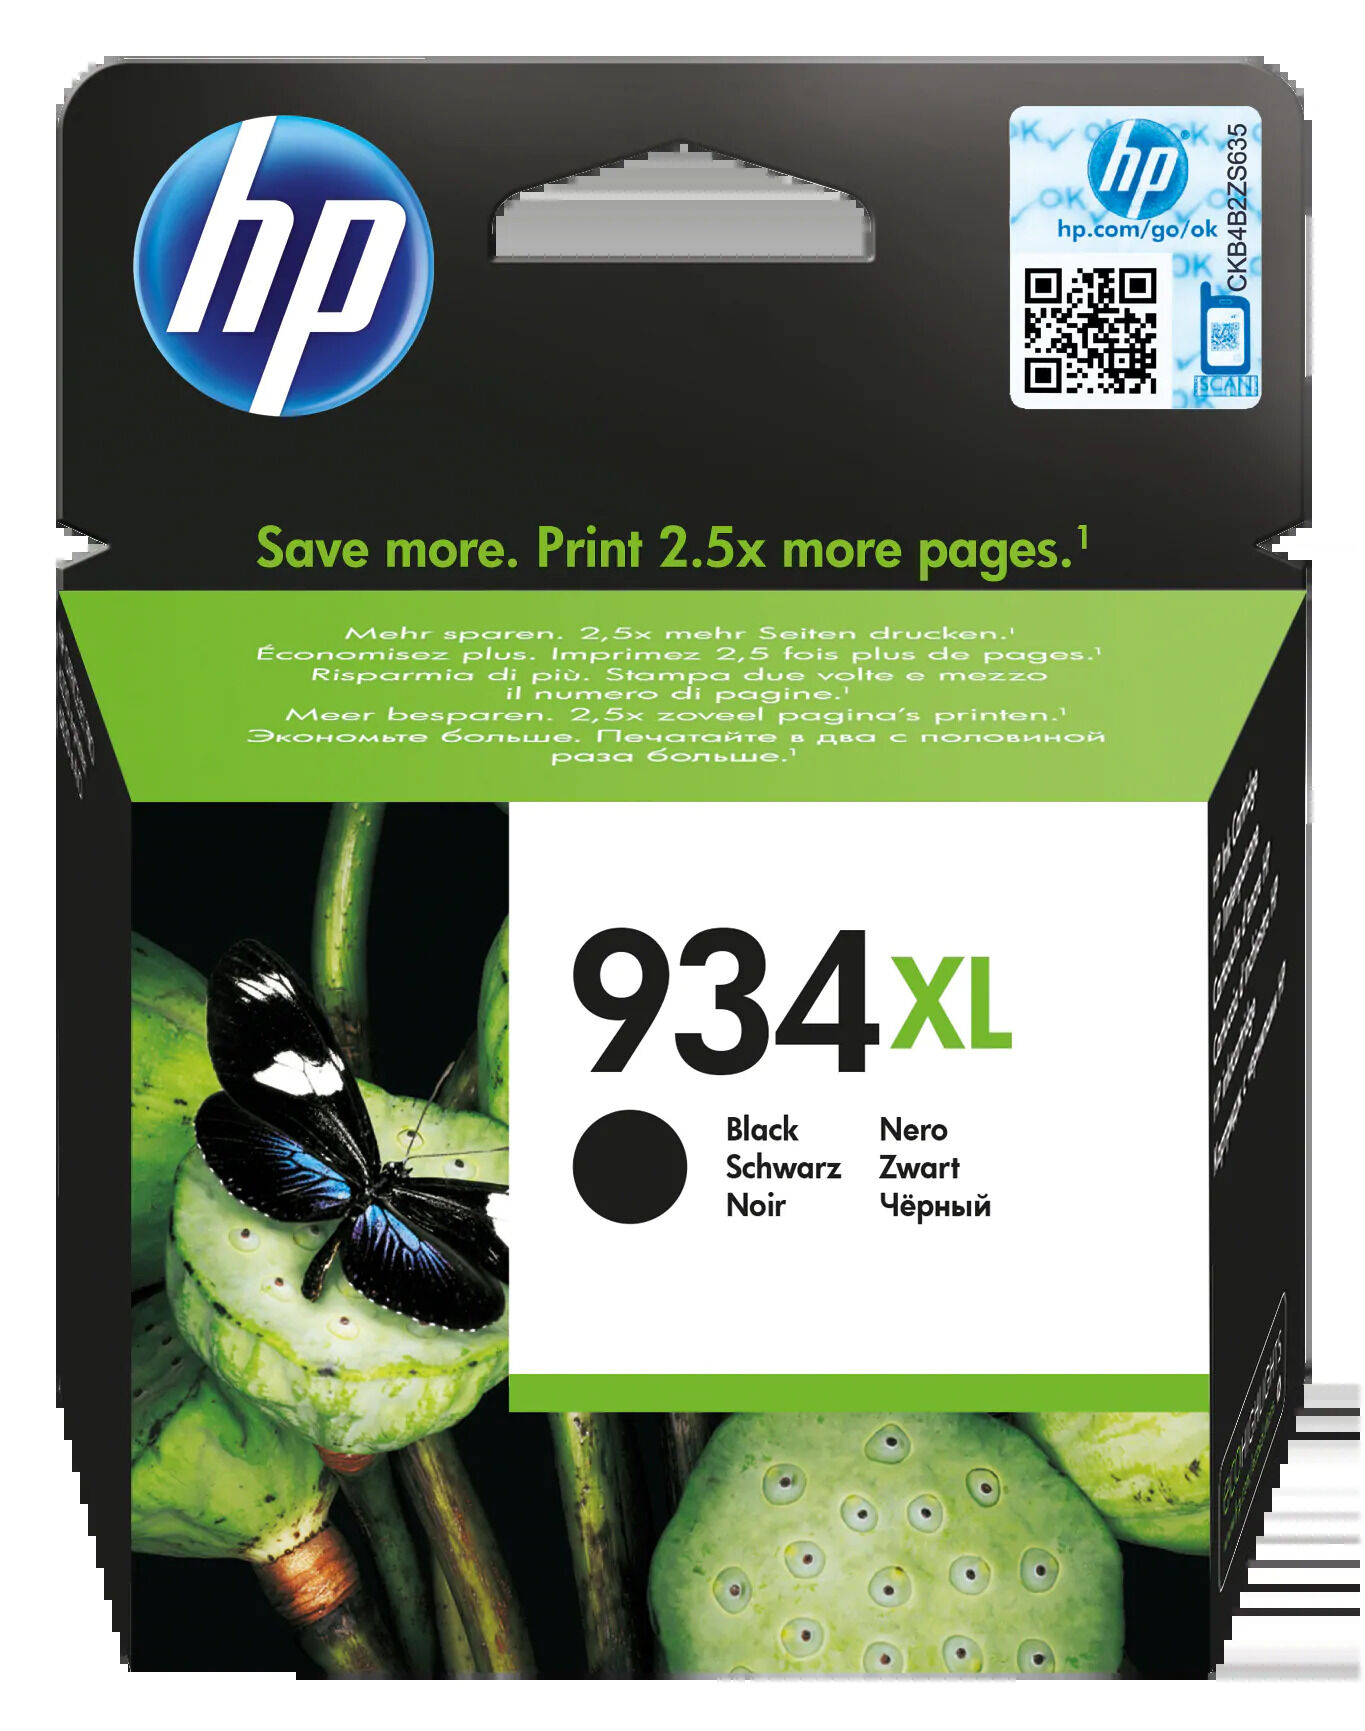 Картридж для печати HP Картридж HP 935 C2P23AE вид печати струйный, цвет Черный, емкость 26мл.